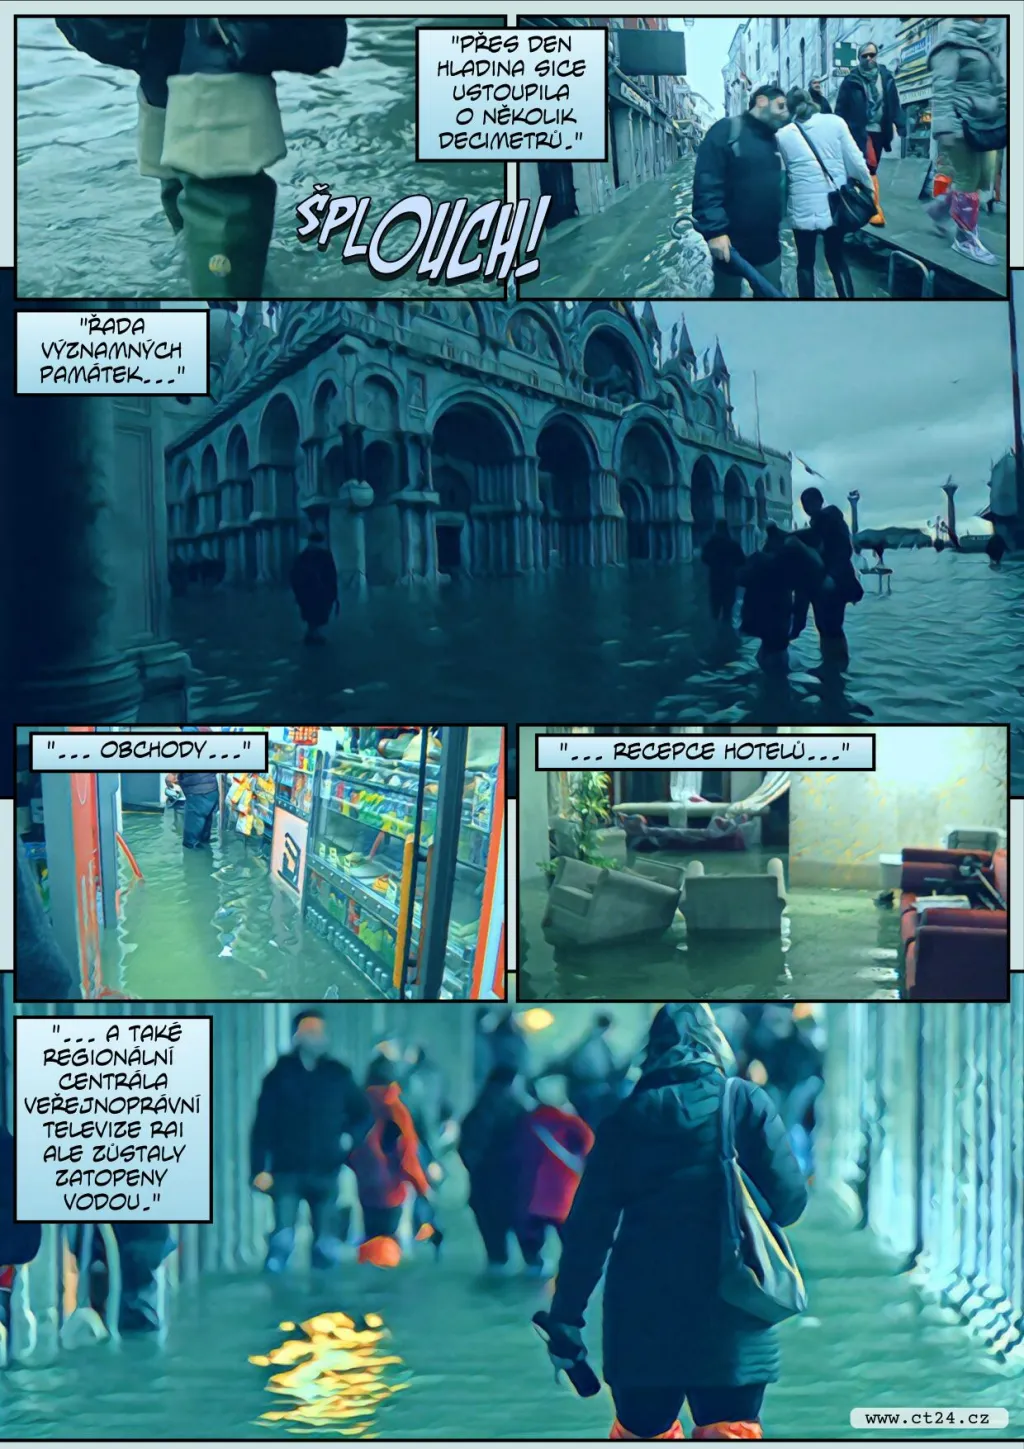 Obchody i památky pod vodou. Italská vláda vyhlásila v Benátkách stav nouze